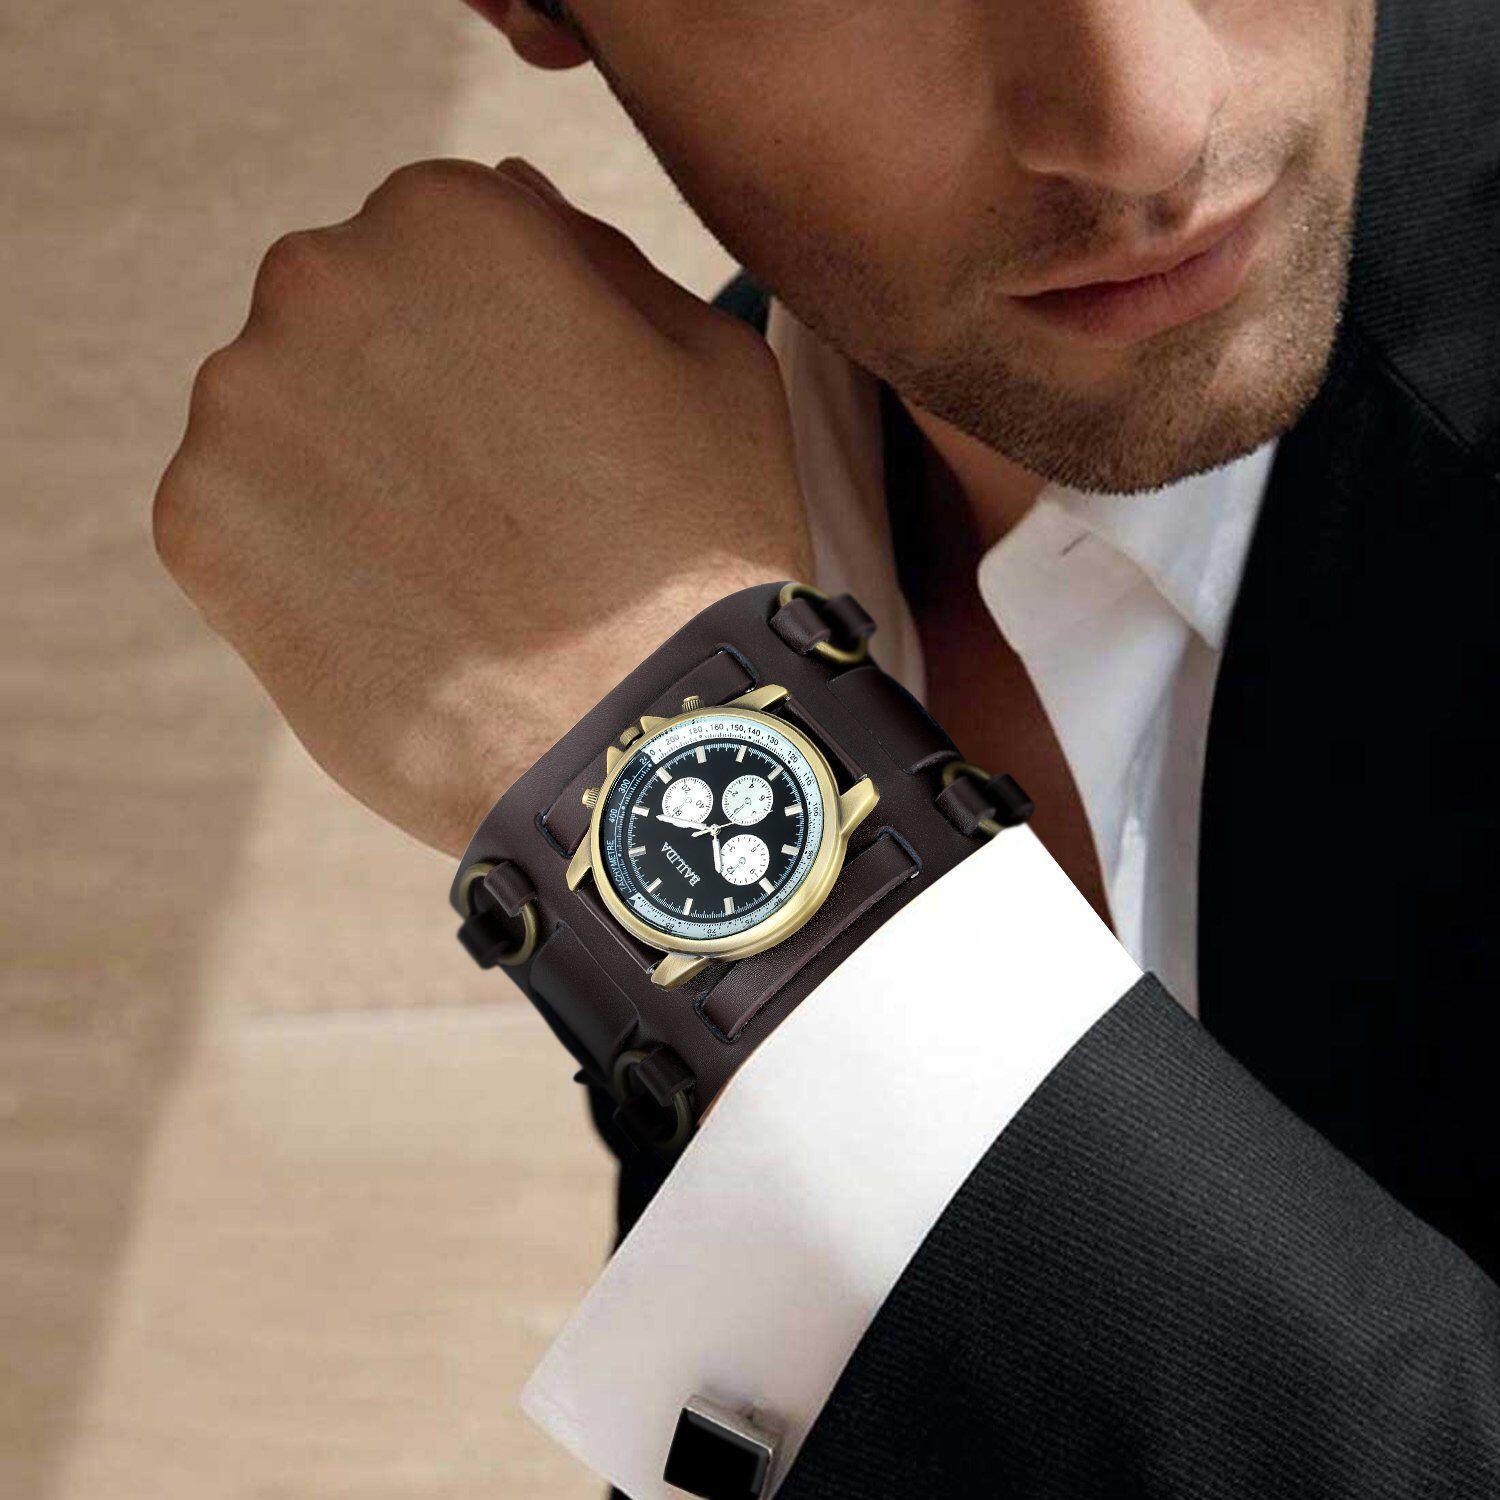 Формы мужских часов. Часы мужские. Красивые мужские часы. Часы на руке. Мужские часы на руке.